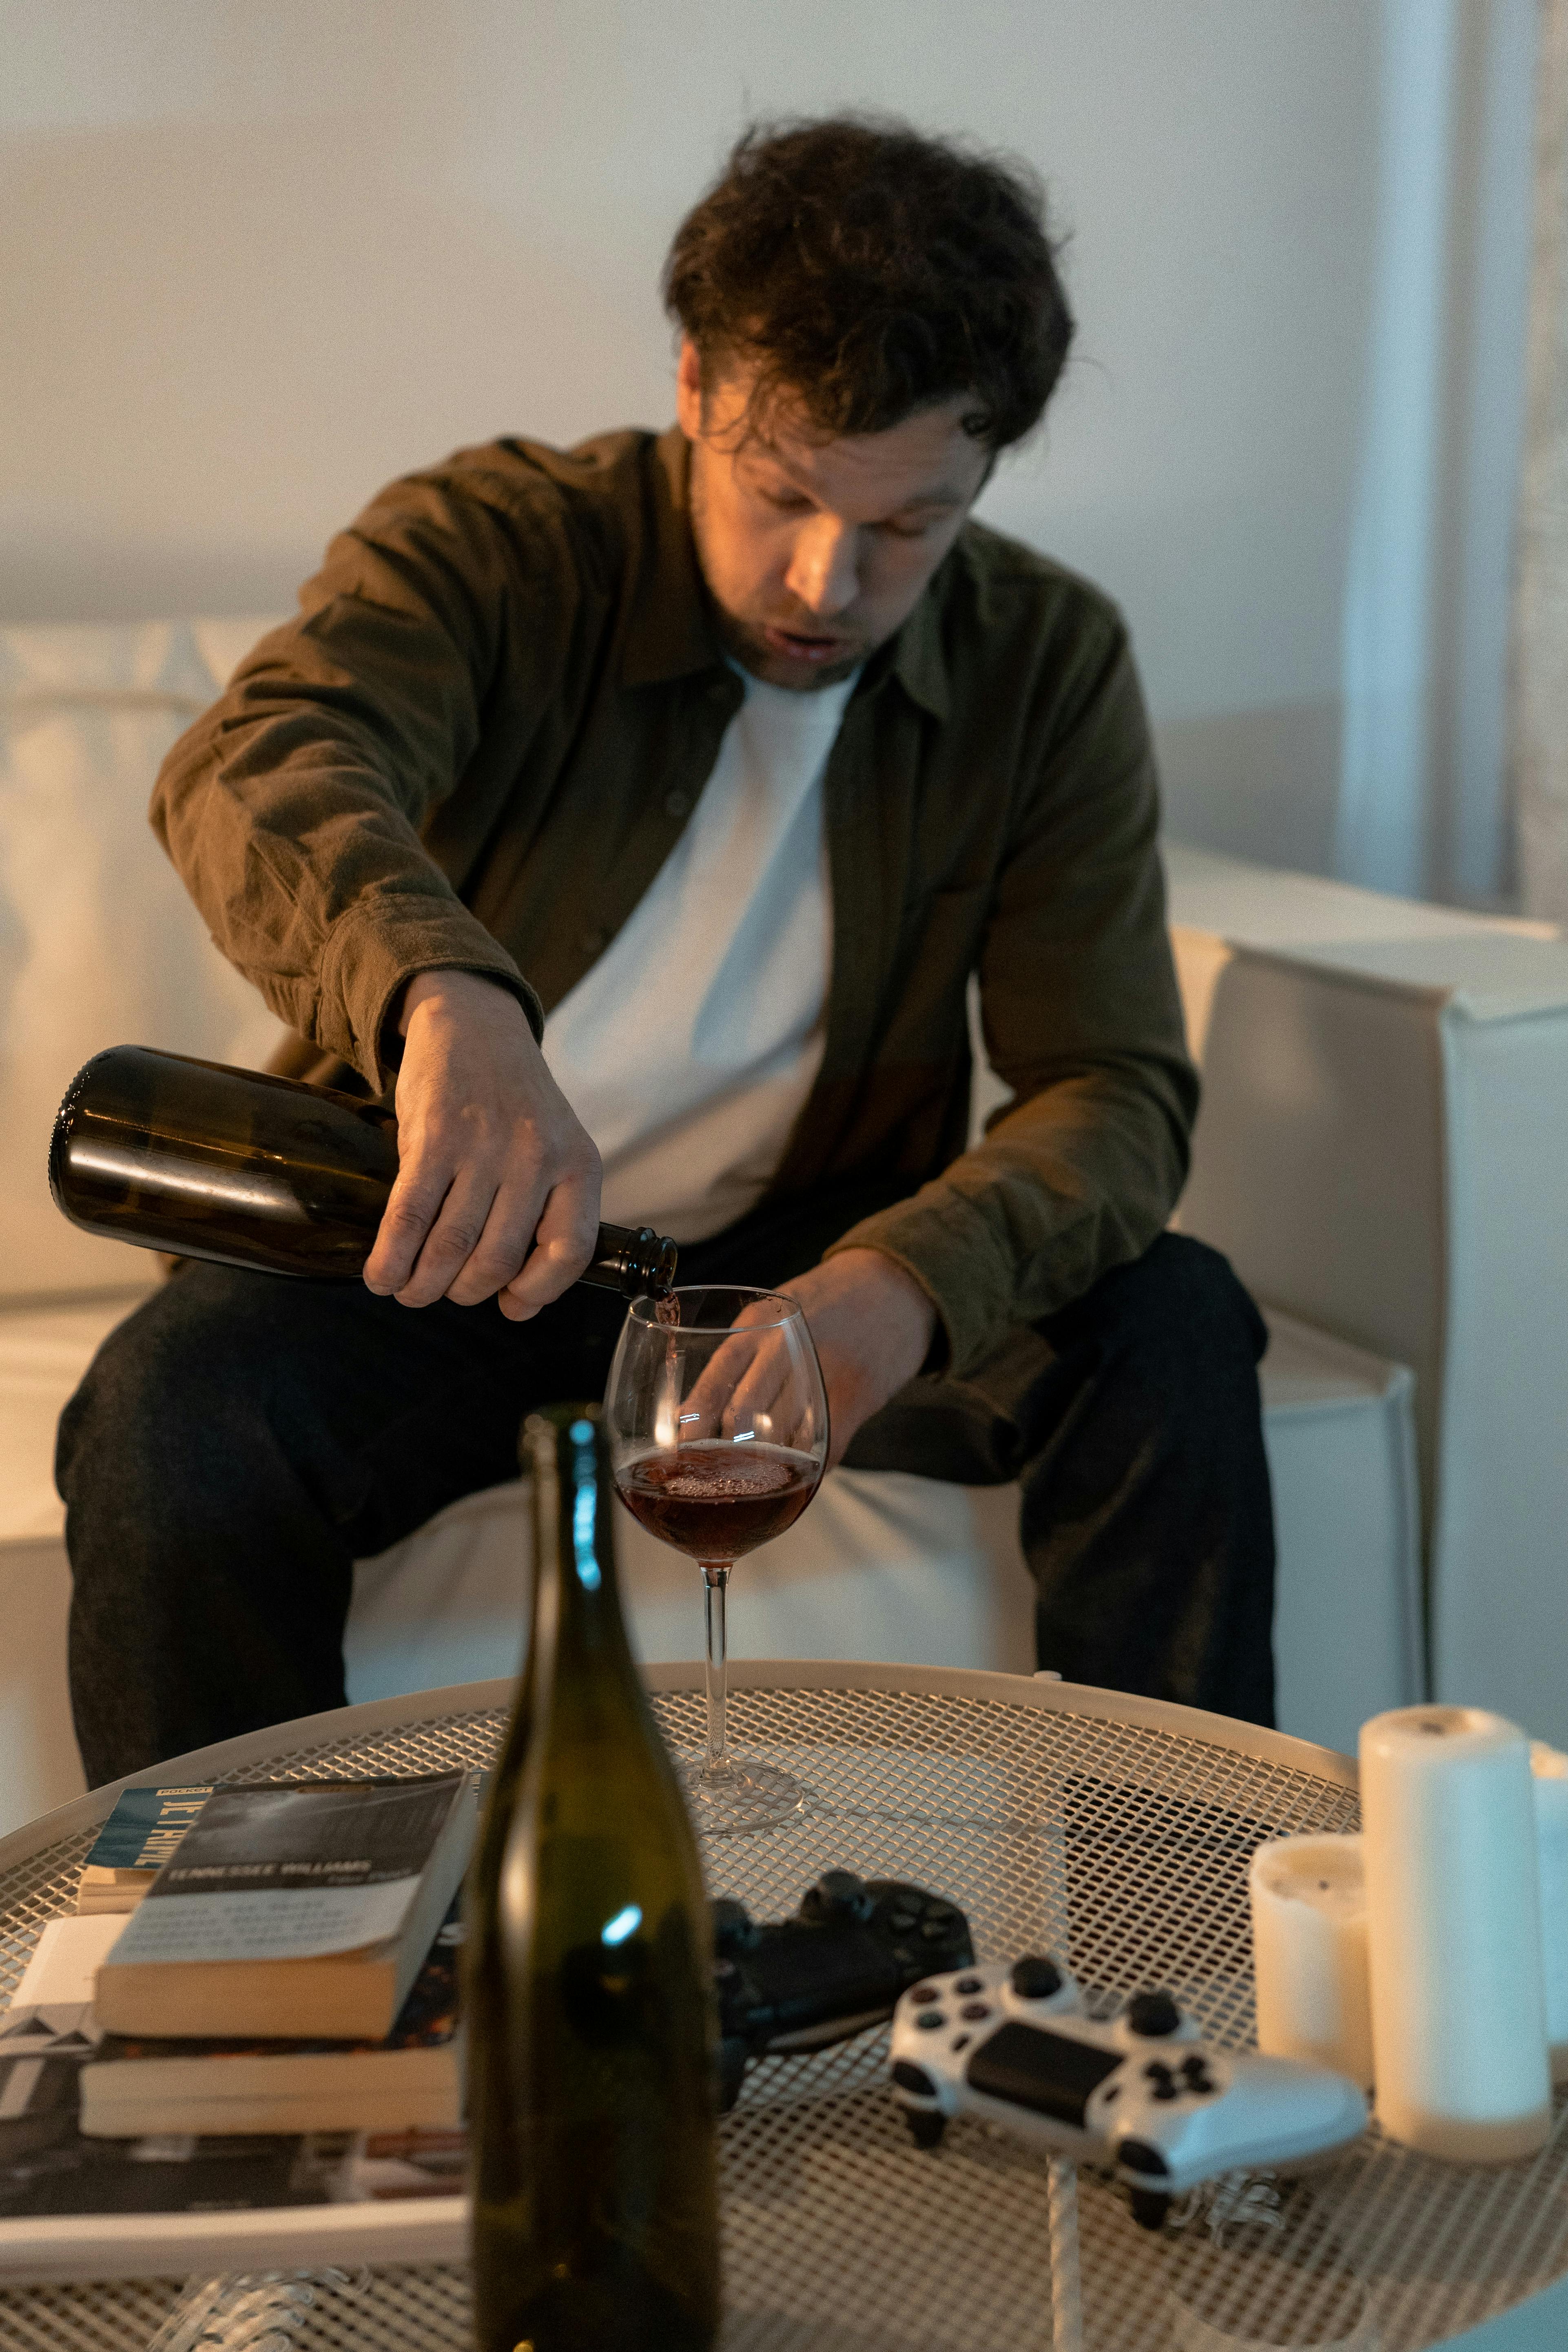 Un homme ivre se verse du vin | Source : Pexels